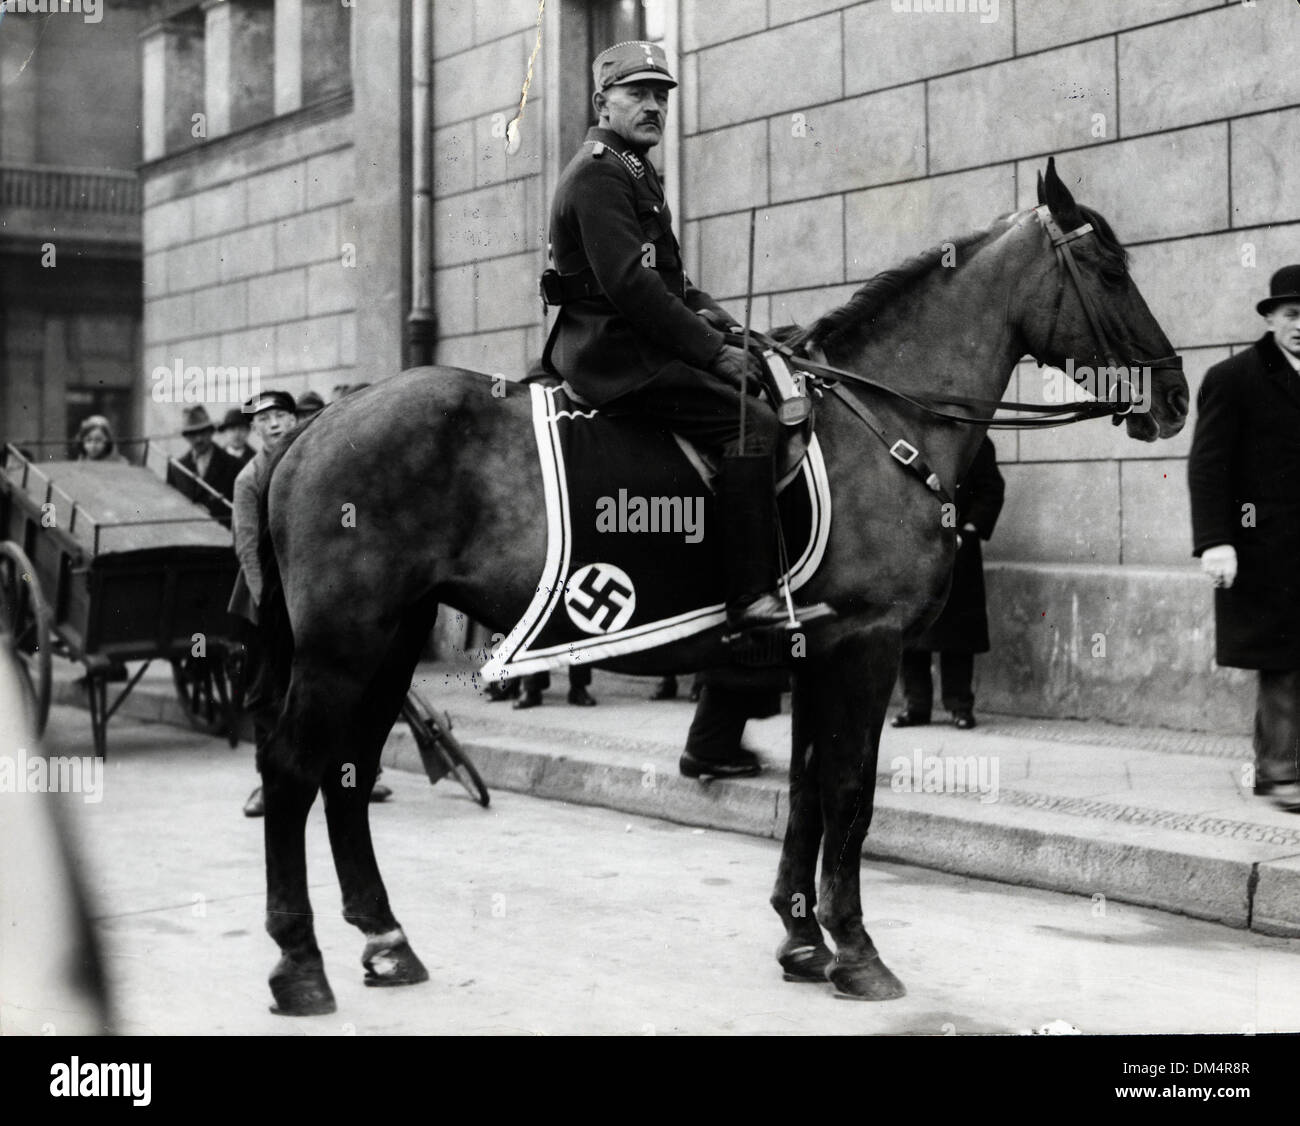 9 novembre 1923 - Berlin, Allemagne nazie - homme à cheval devant le bâtiment du Reichstag. (Crédit Image : © Keystone Photos USA/ZUMAPRESS.com) Banque D'Images